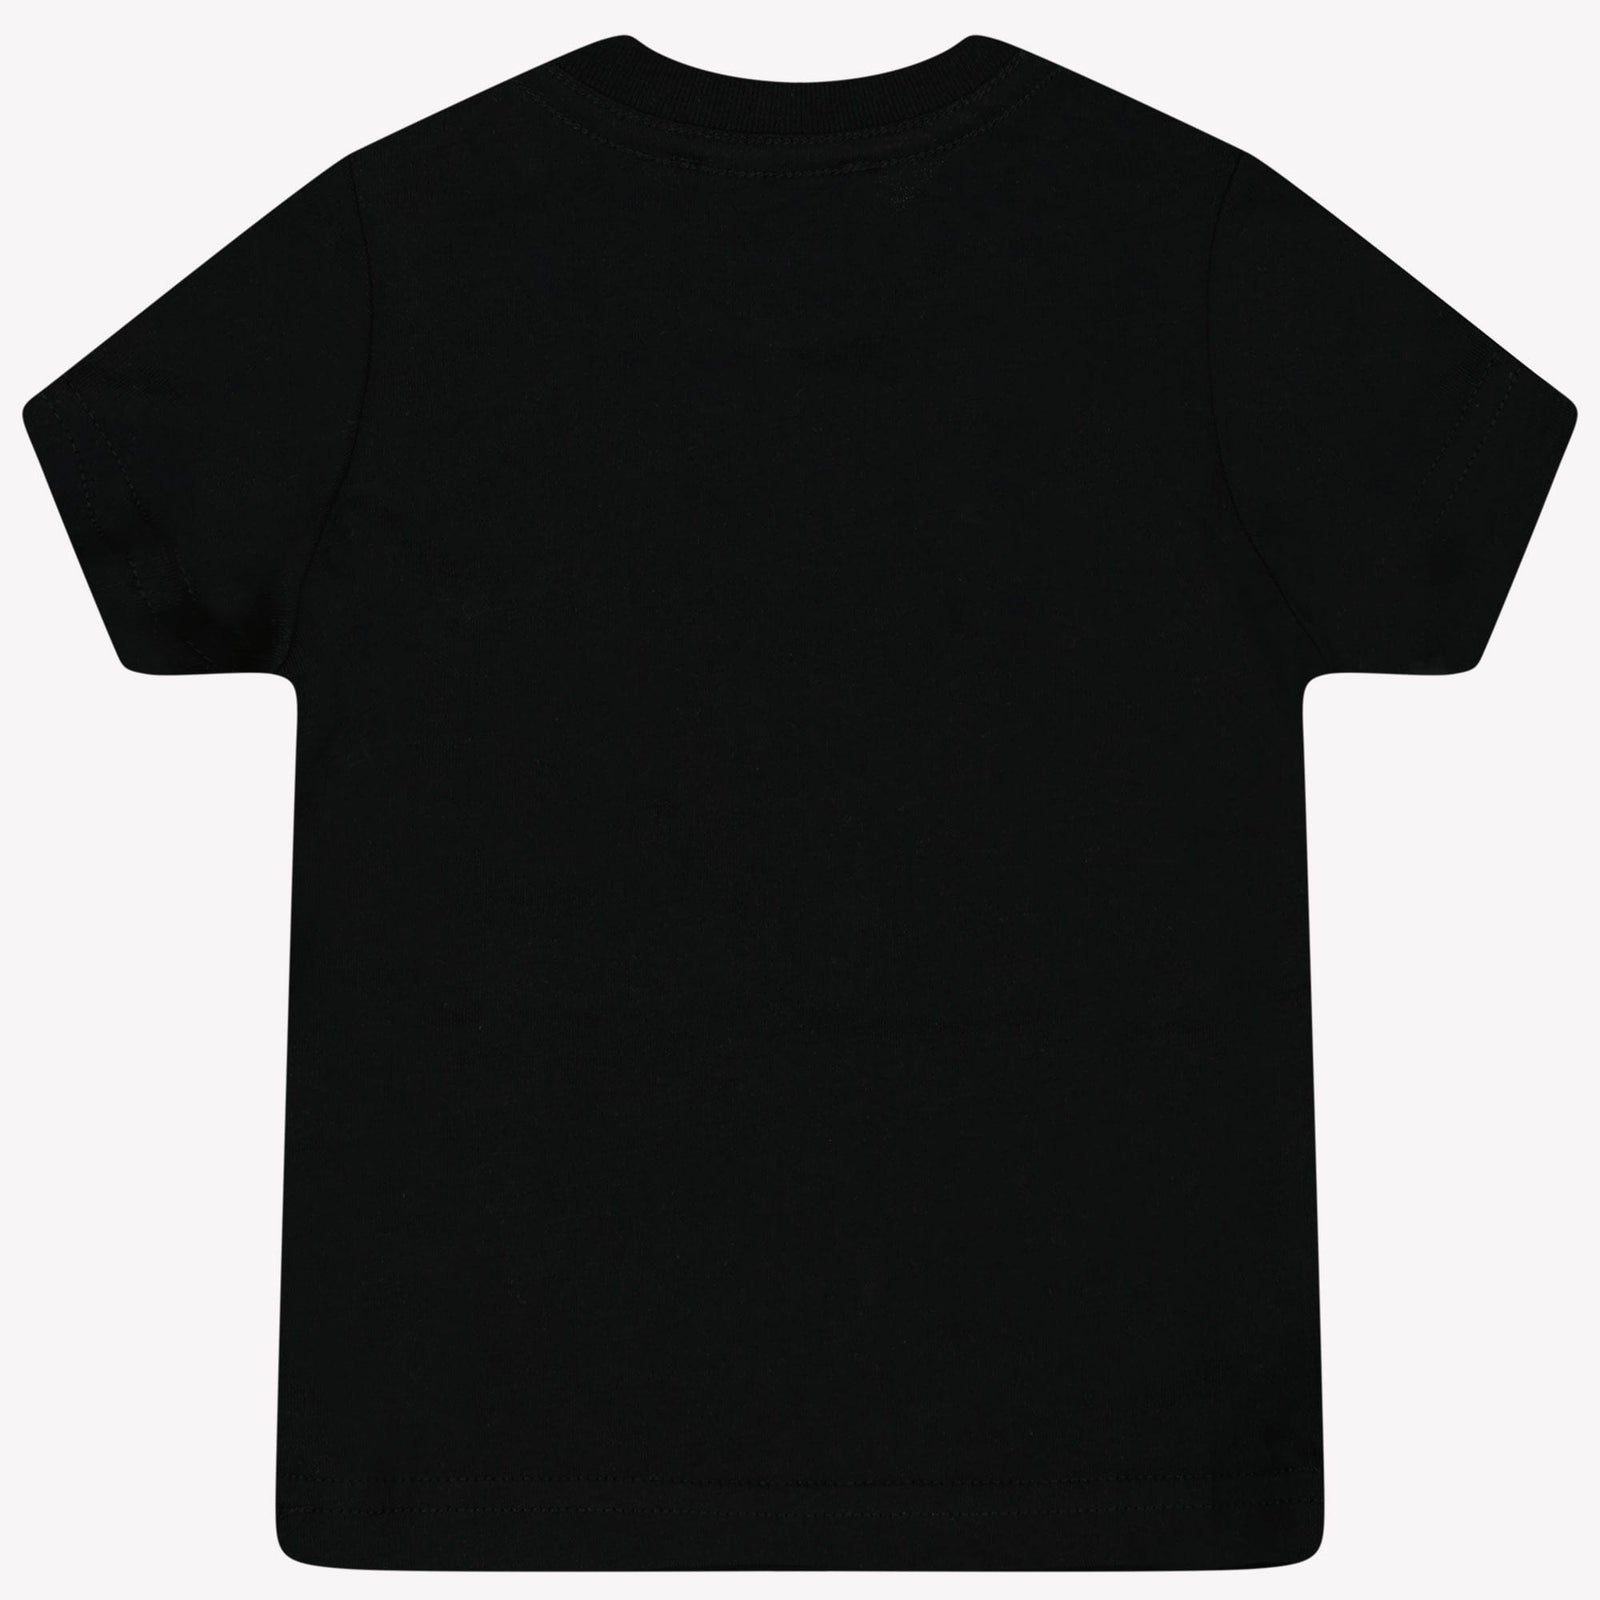 Dsquared2 Baby Jongens T-Shirt Zwart 3 mnd